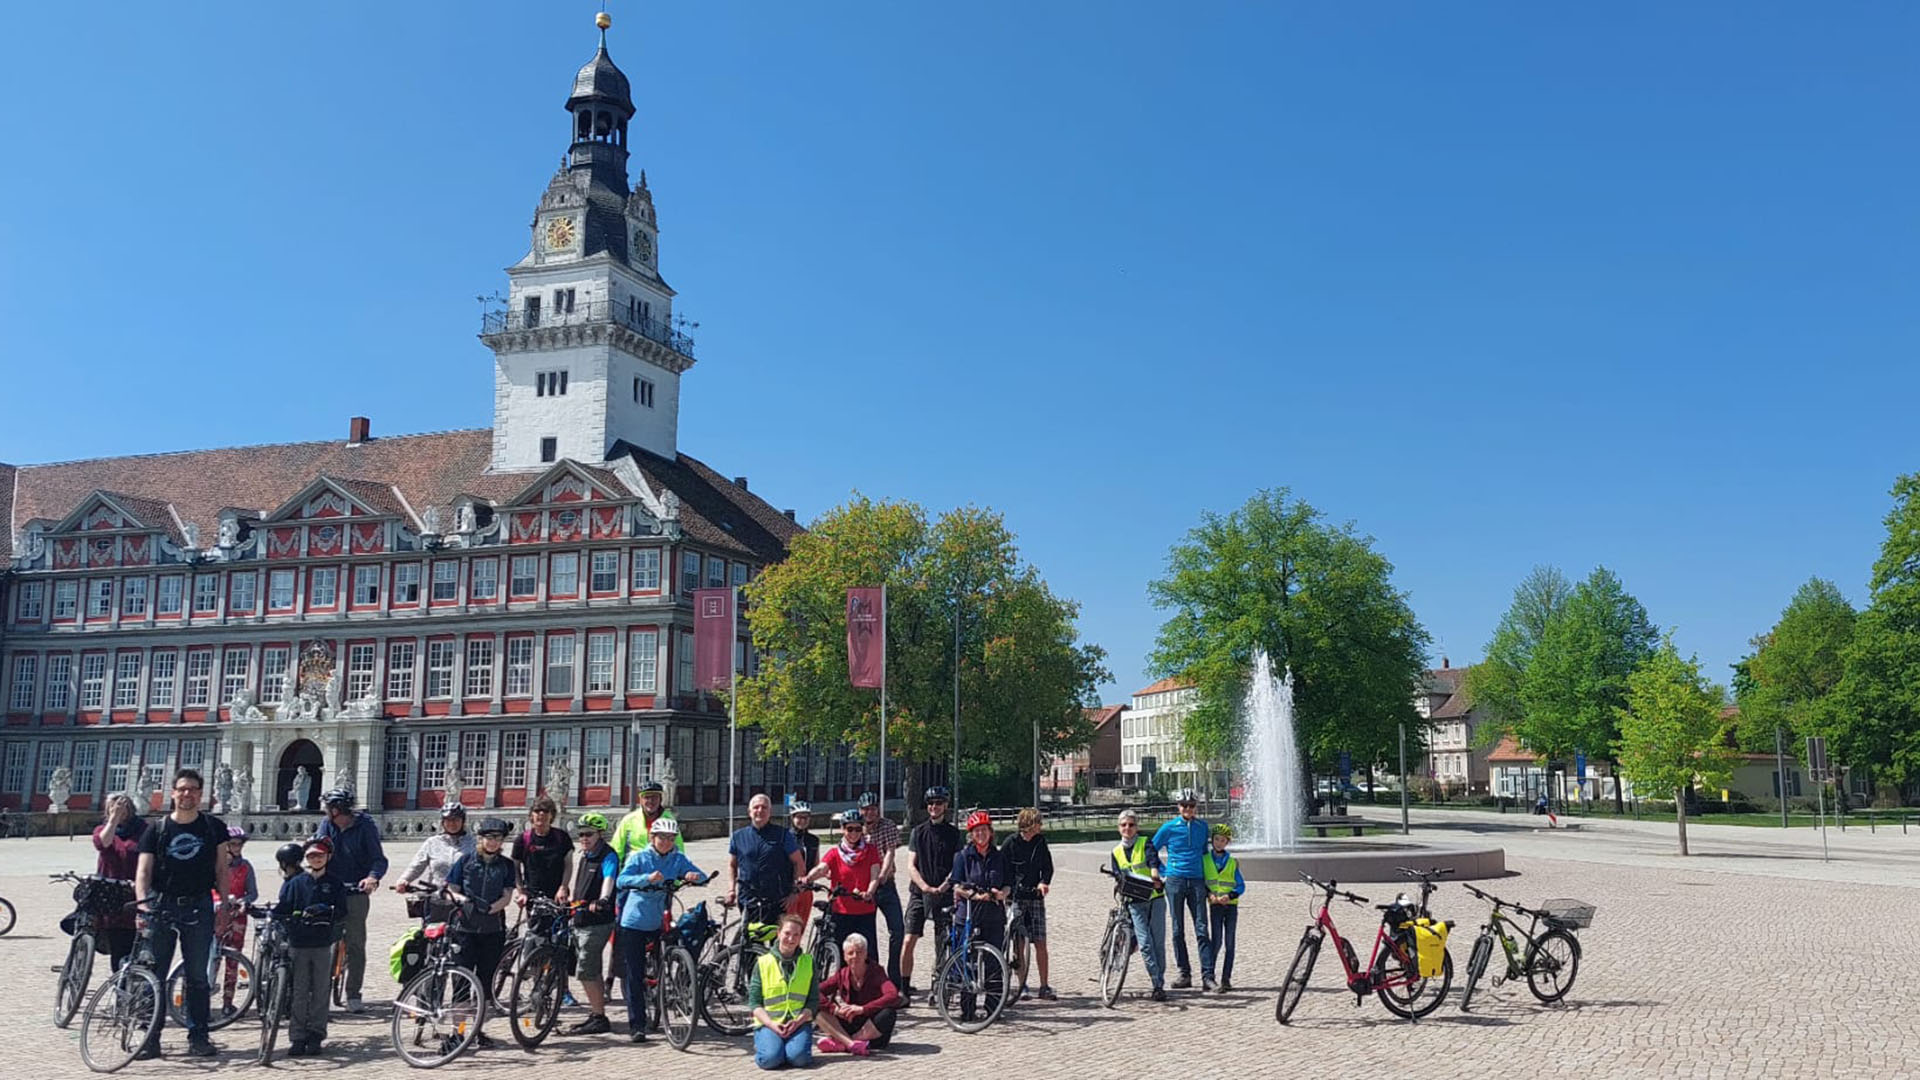 Auf dem Schlossplatz vor dem Schloss stehen mehrere Radfahrerinnen und -fahrer mit ihren Rädern.